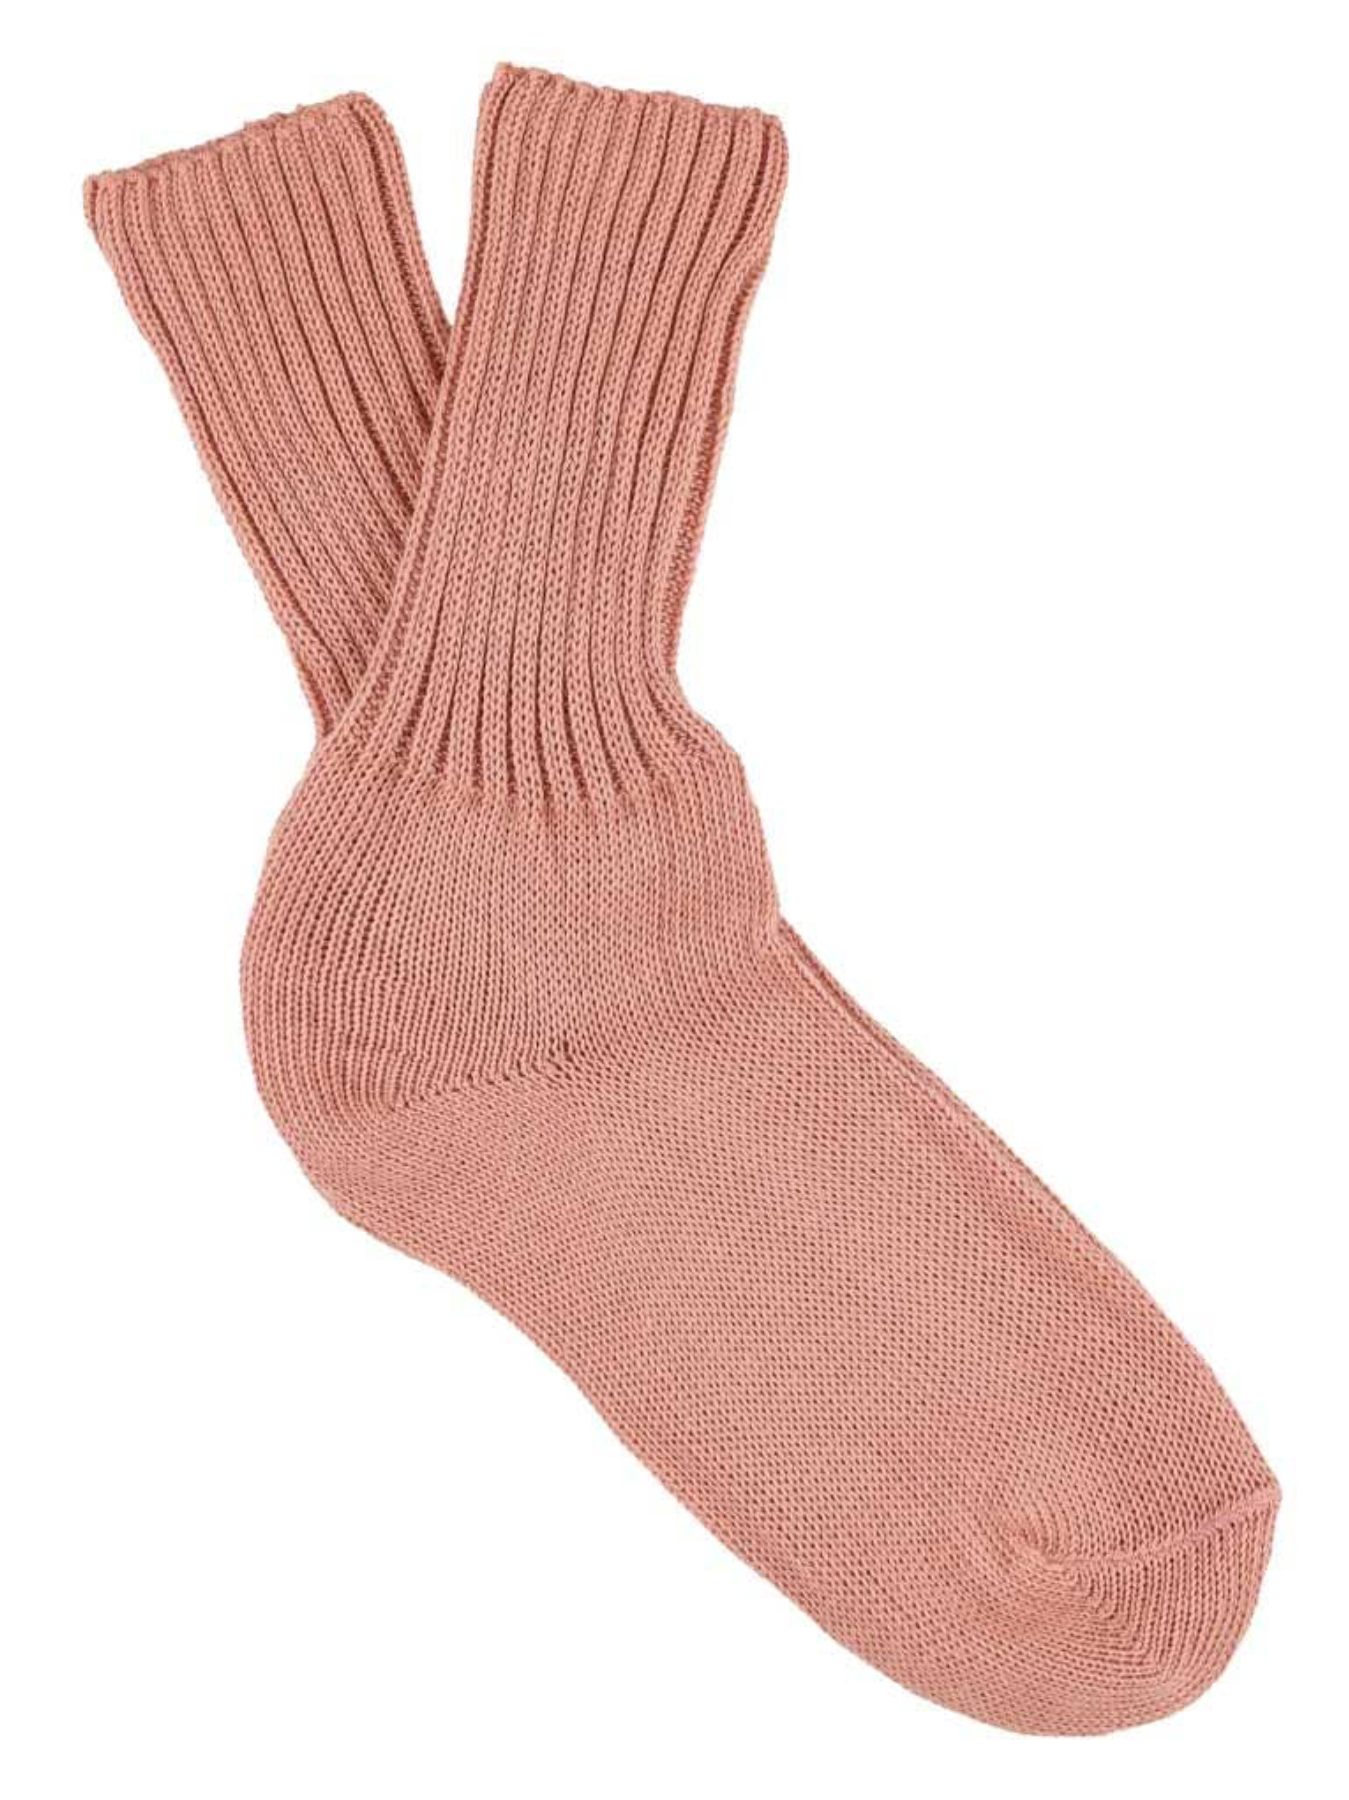 Chaussettes tricotées pour femmes - Rose